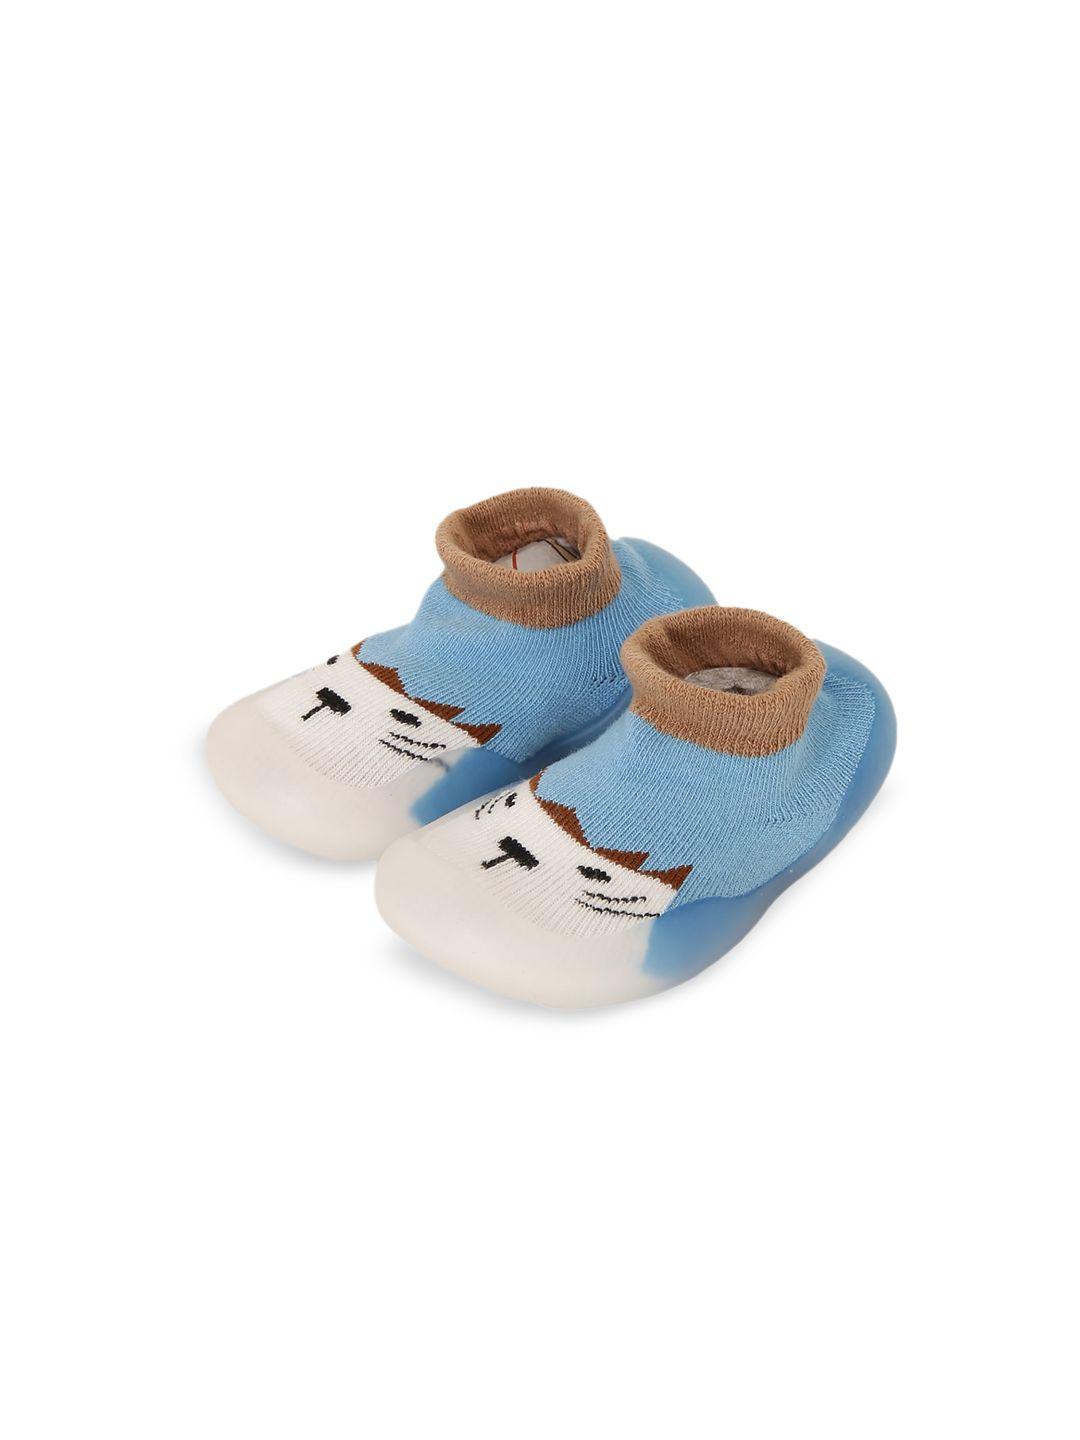 miarcus infants blue & white cotton rubber grip sole socks booties